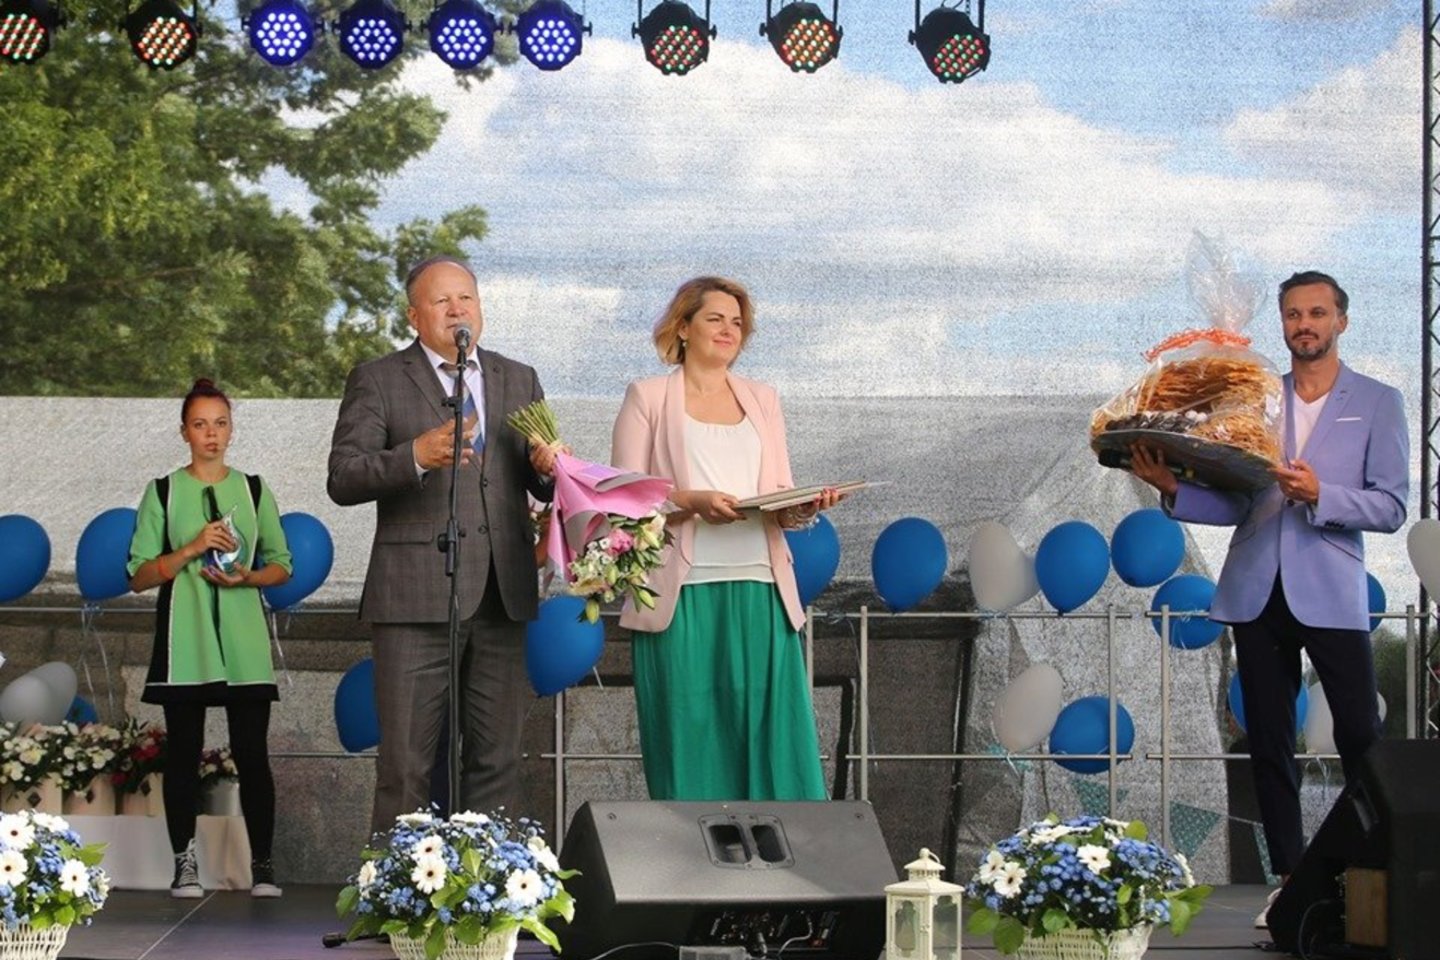  Vilkijojoje nuvilnijo įspūdinga vaikus globojančio fondo šventė.<br> Kauno rajono savivaldybės nuotr.